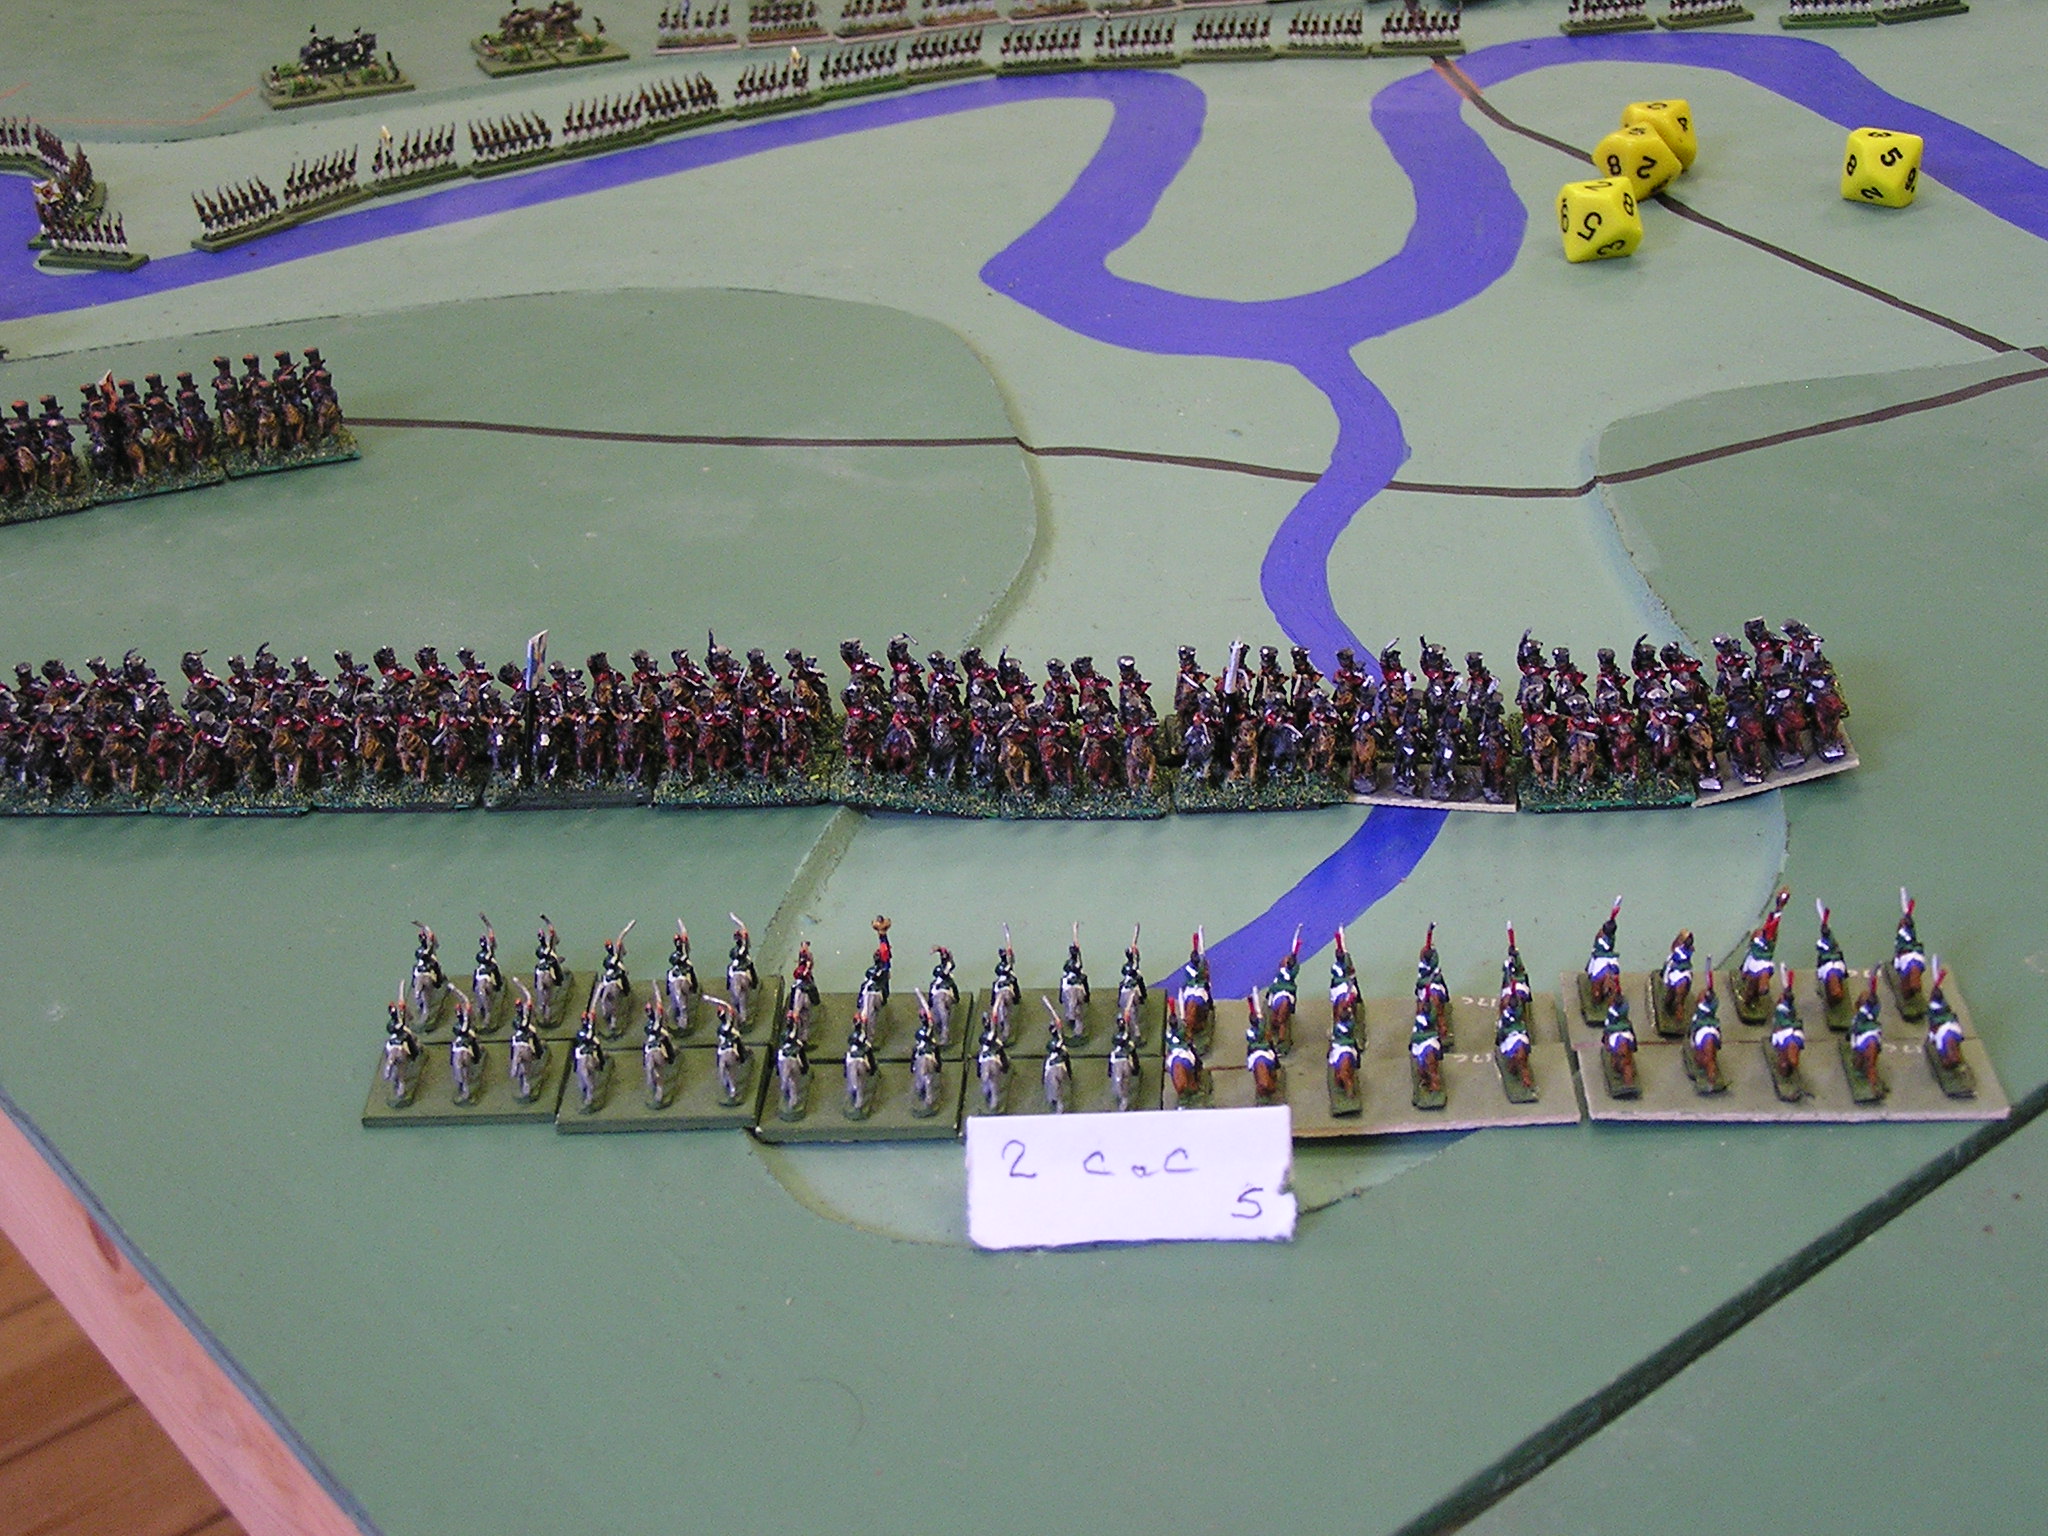 Russian Cossacks advance in North